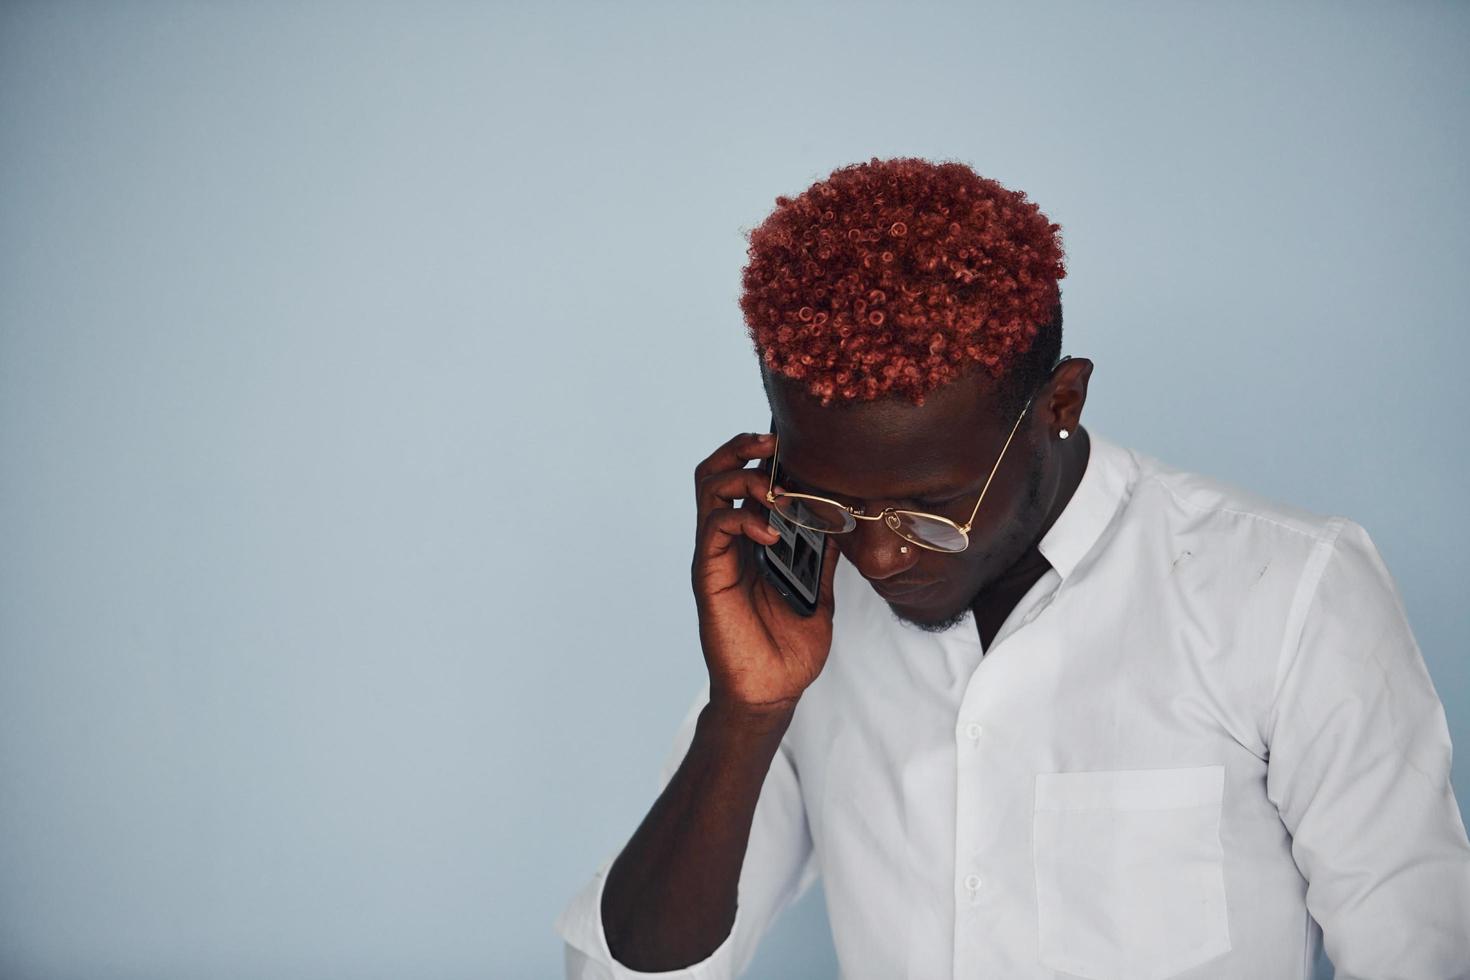 joven afroamericano con ropa formal blanca hablando por teléfono contra la pared en el interior foto